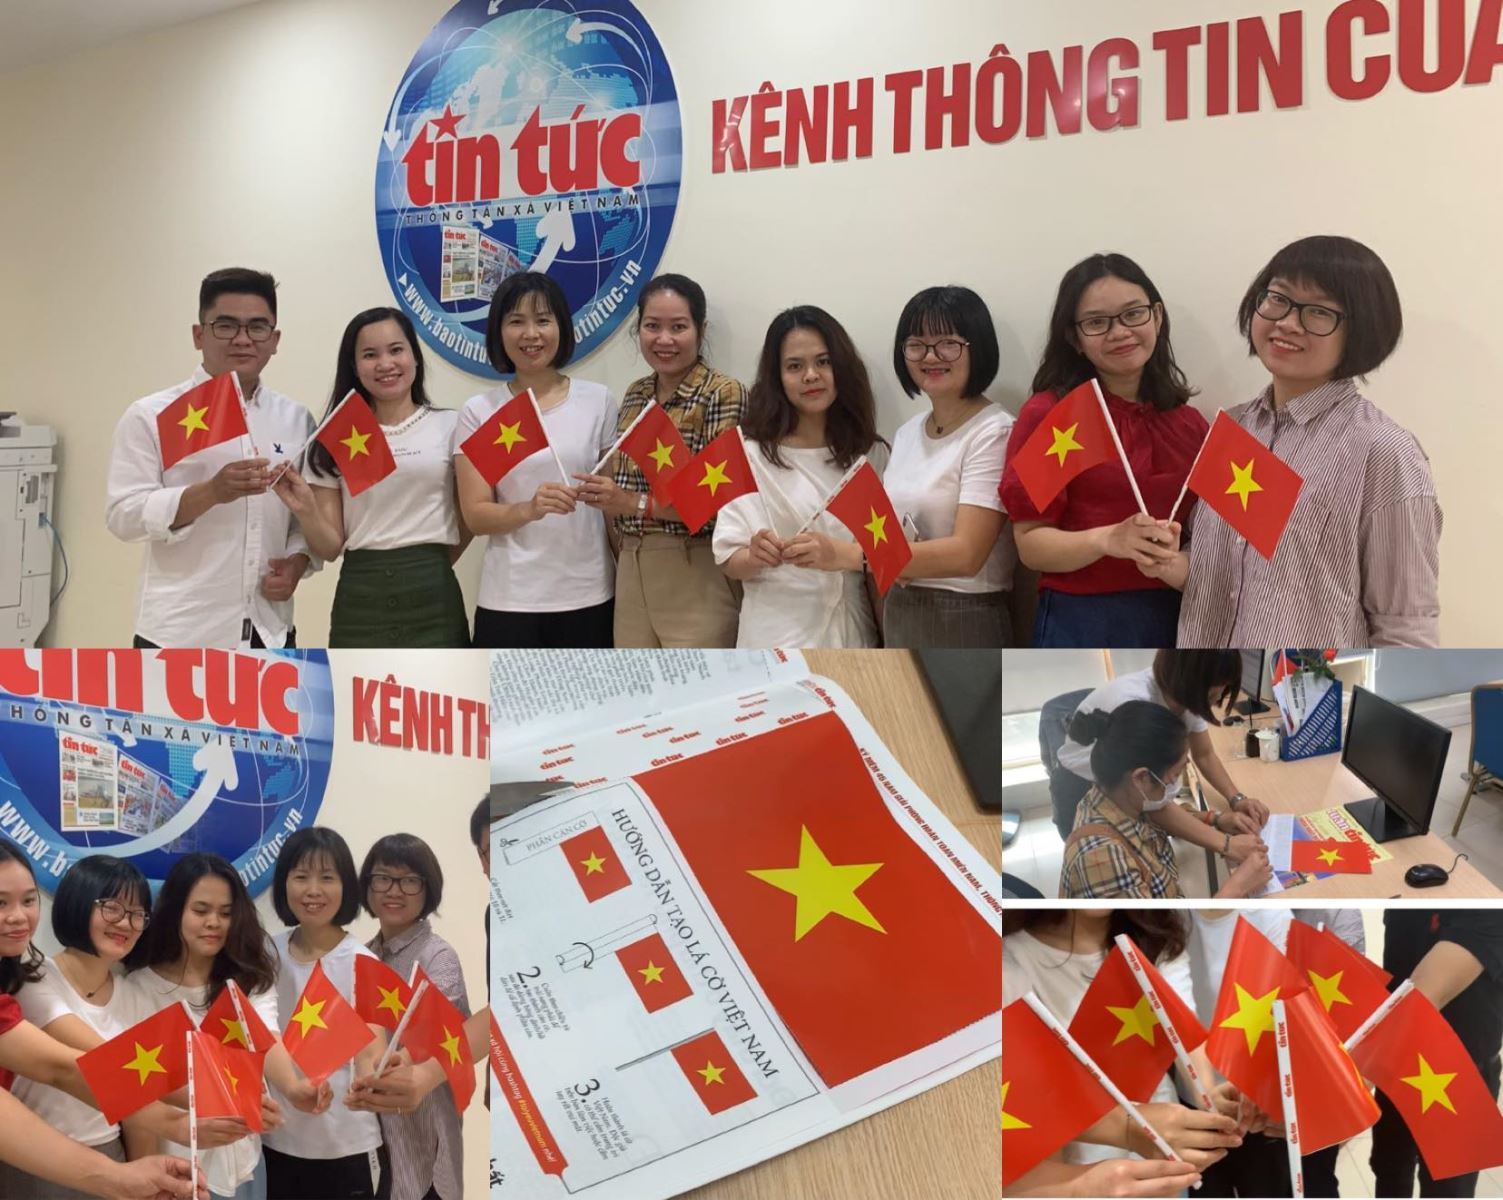 Hình ảnh lá cờ Việt Nam được cất cánh trong bầu trời xanh biếc trông thật đẹp mắt và nên thơ. Từ những đường nét sắc sảo của lá cờ, chúng ta có thể cảm nhận được tâm hồn của người dân và đất nước Việt Nam. Hãy cùng tìm hiểu những hình ảnh tuyệt đẹp của lá cờ Việt Nam để hiểu hơn về văn hóa và lịch sử của đất nước này.